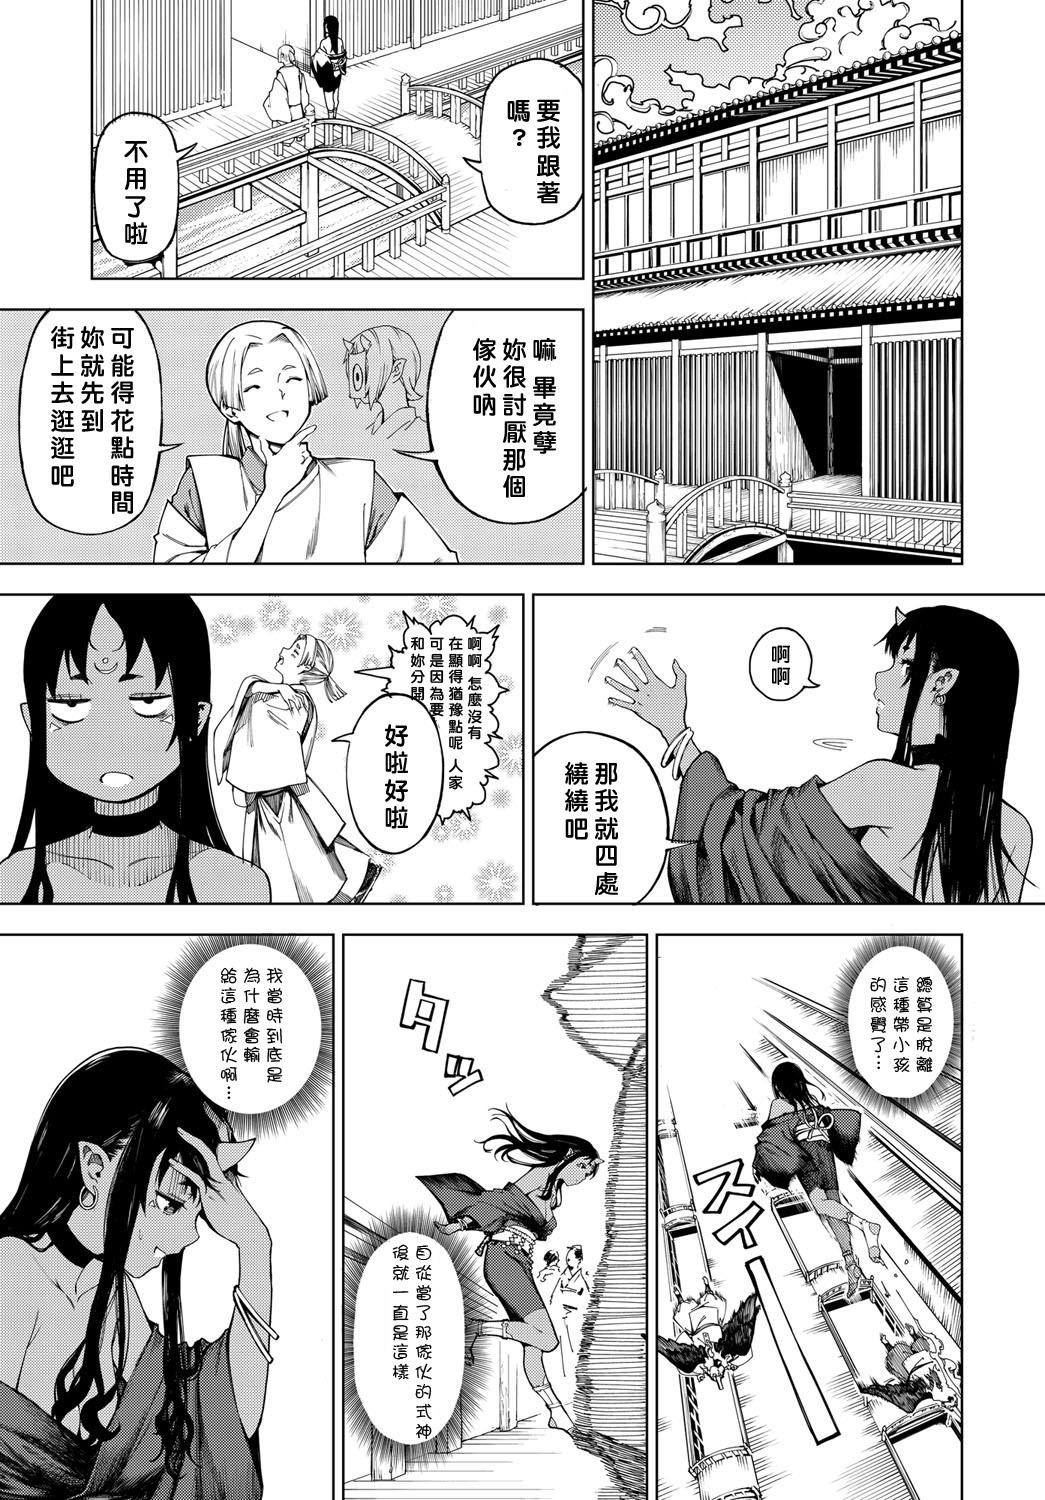 Gaystraight Izayoi no Tsuki | Waning Moon Cums - Page 3